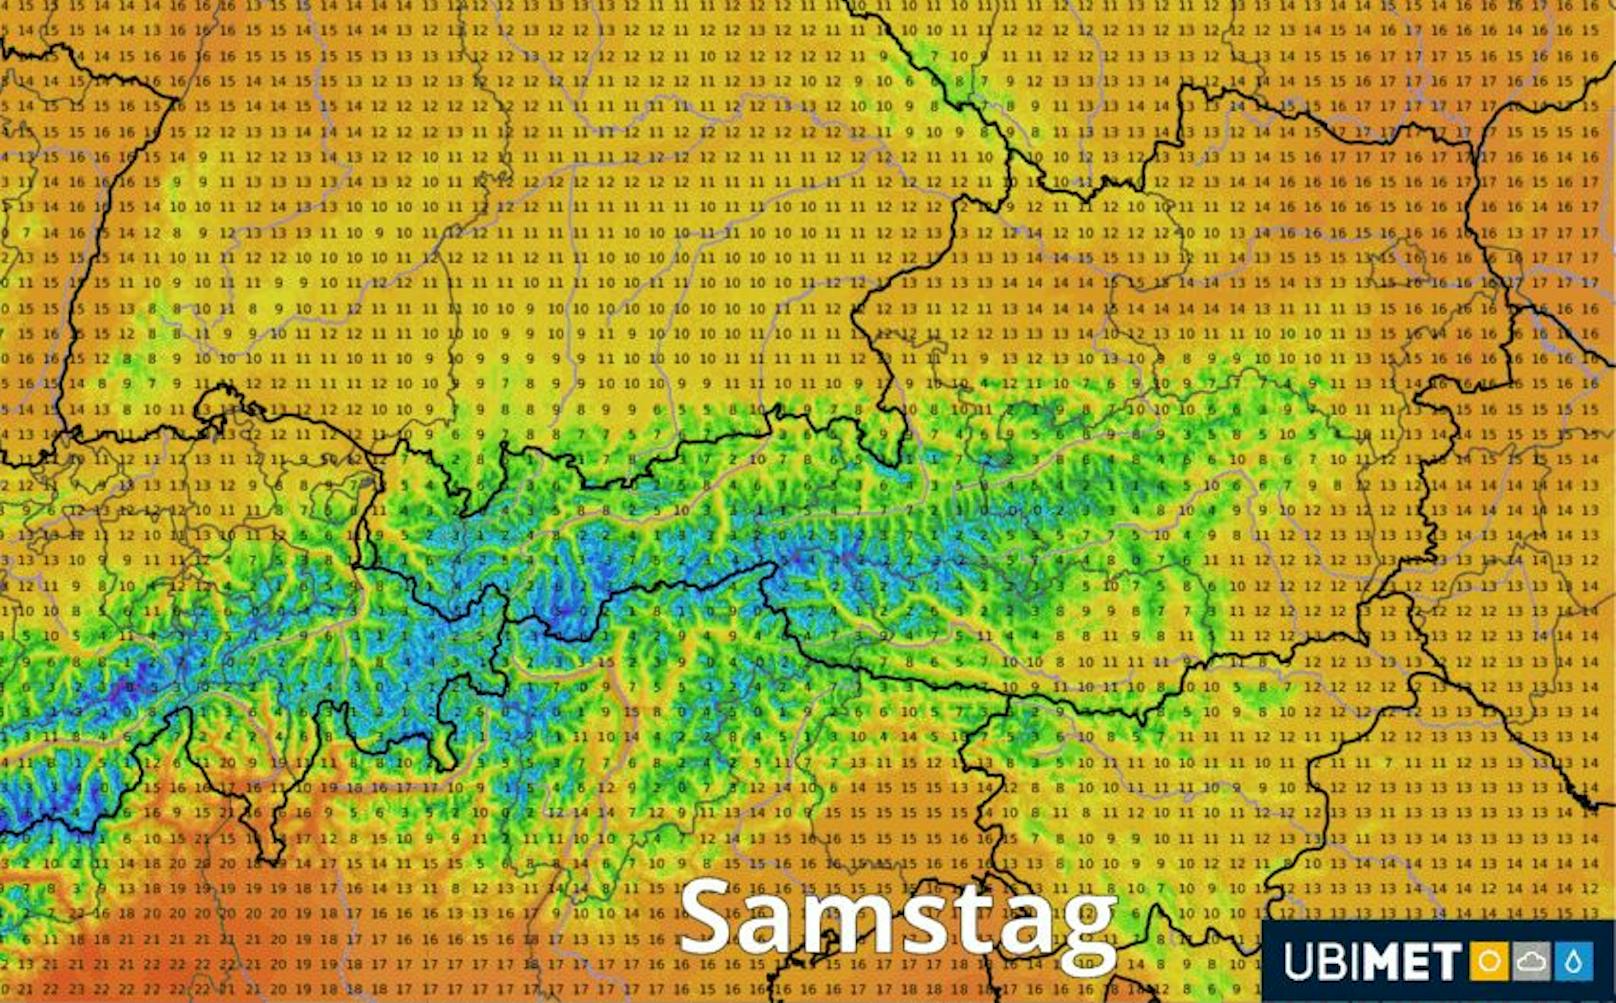 In Österreich wird es jetzt deutlich kühler.